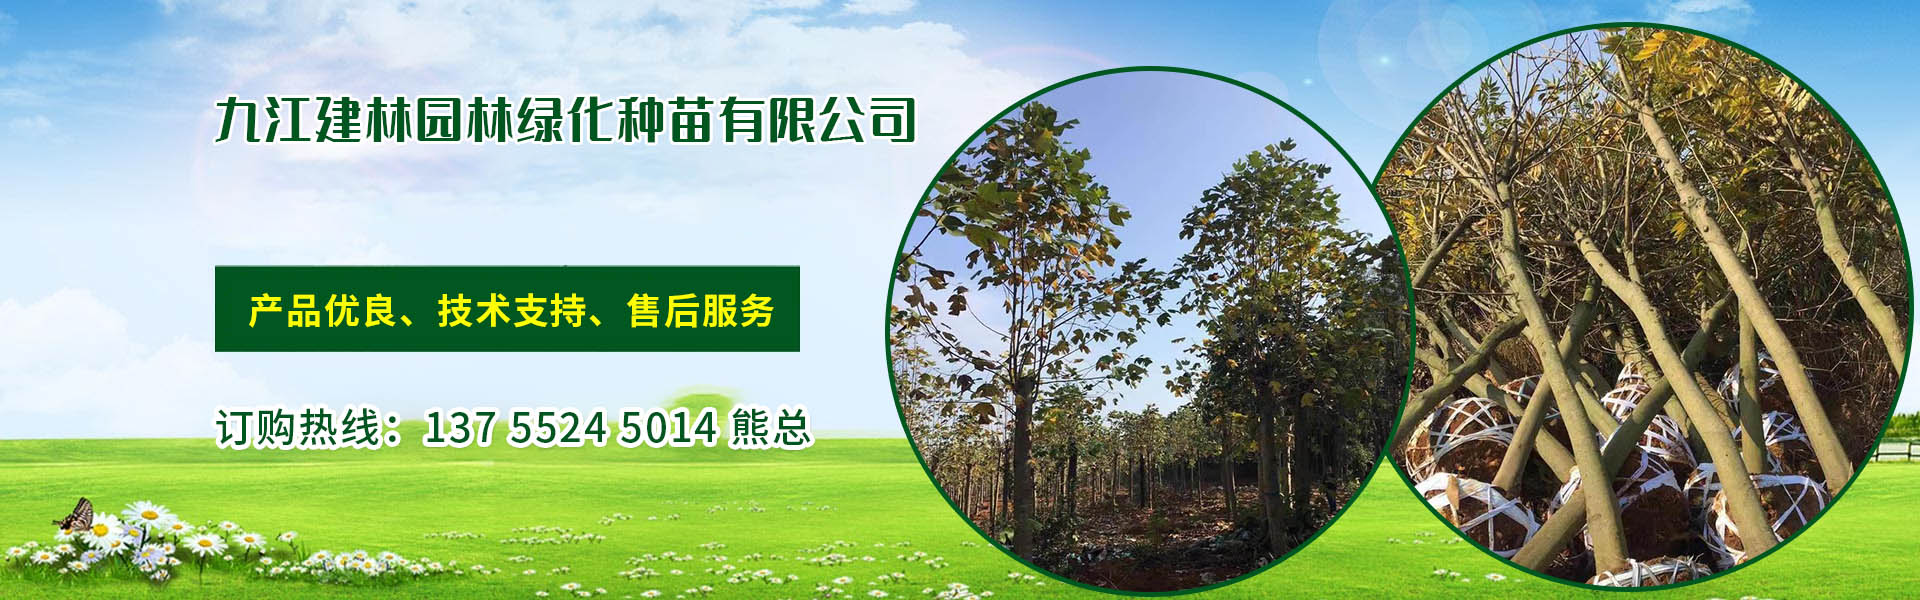 九江建林園林綠化種苗有限公司